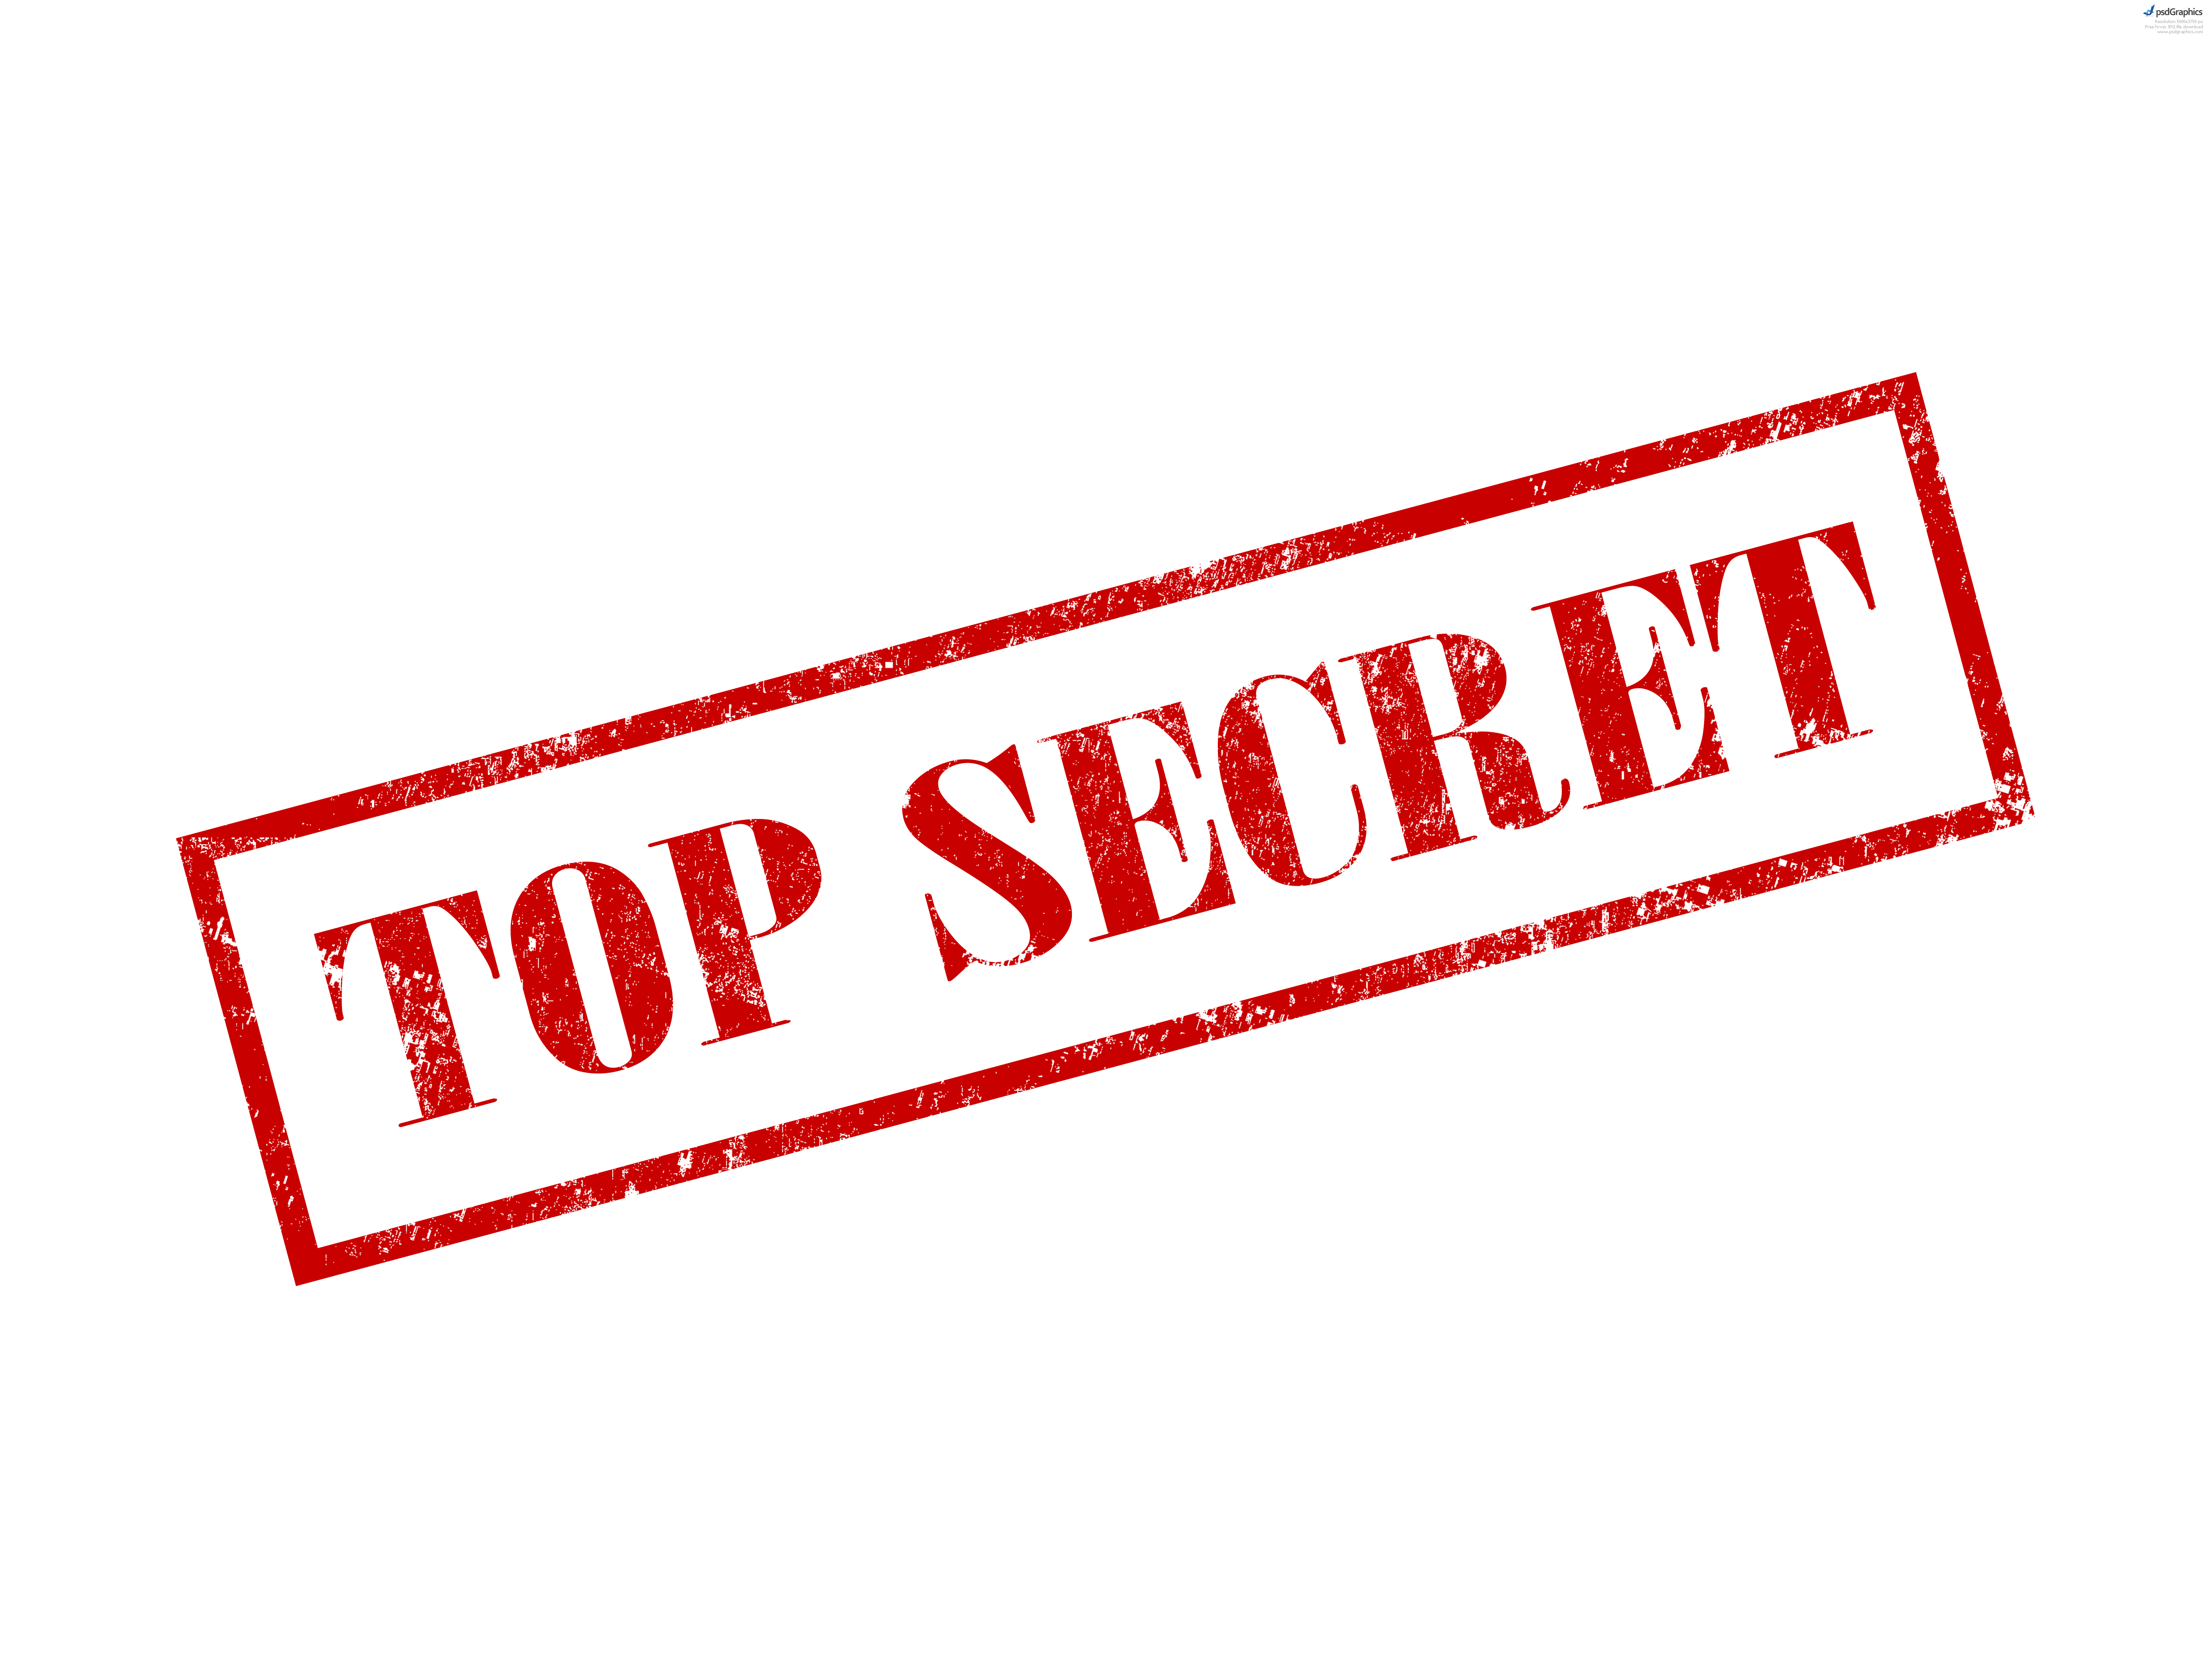 Top Secret Stamp And Envelope - Top Secret Clip Art